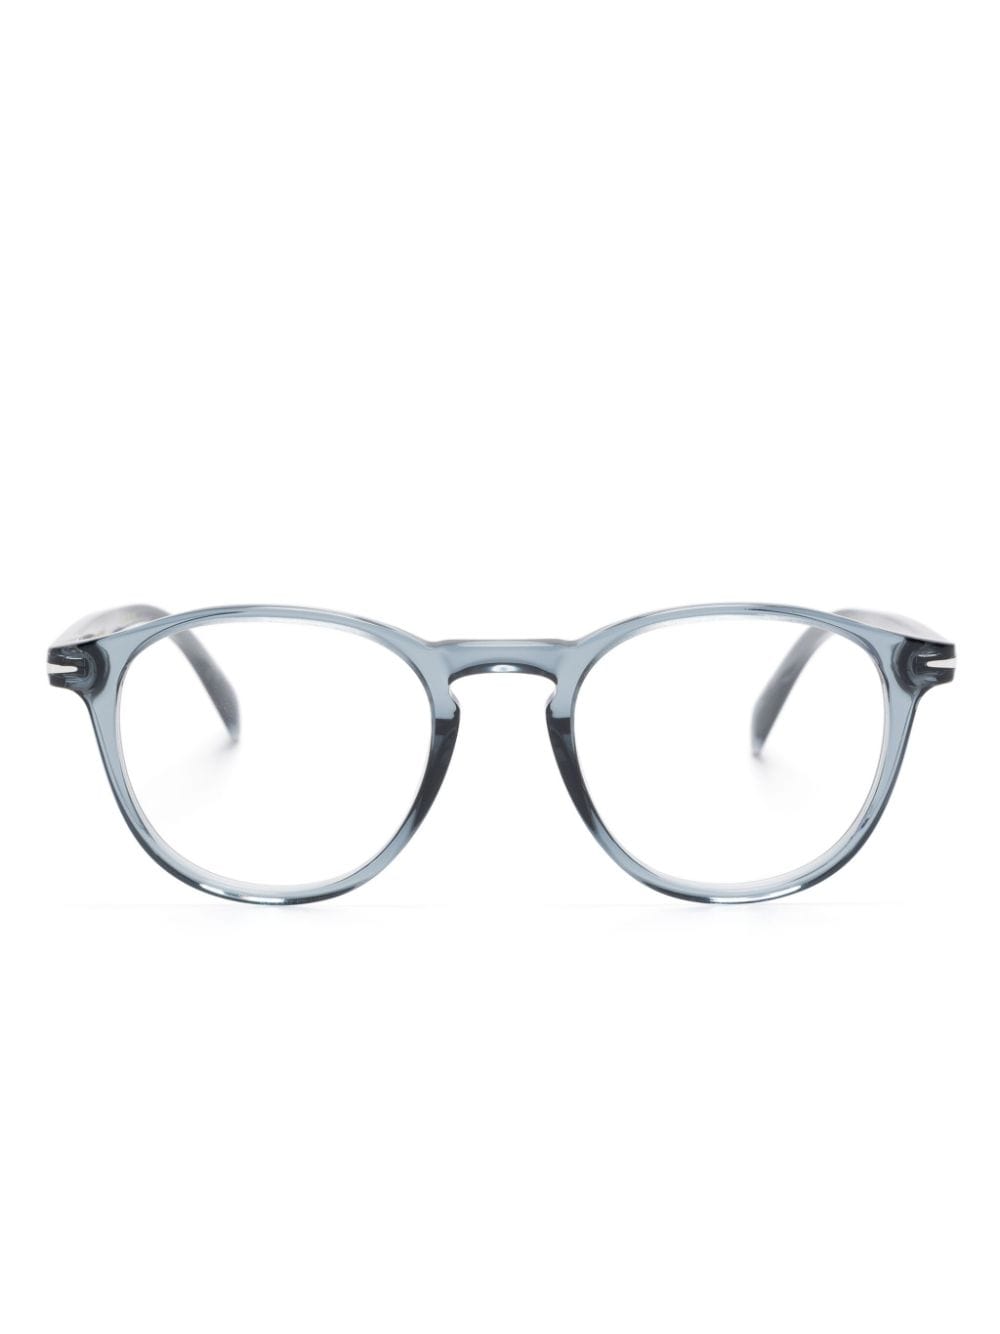 Eyewear by David Beckham DB 1018 pantos-frame glasses - Blue von Eyewear by David Beckham